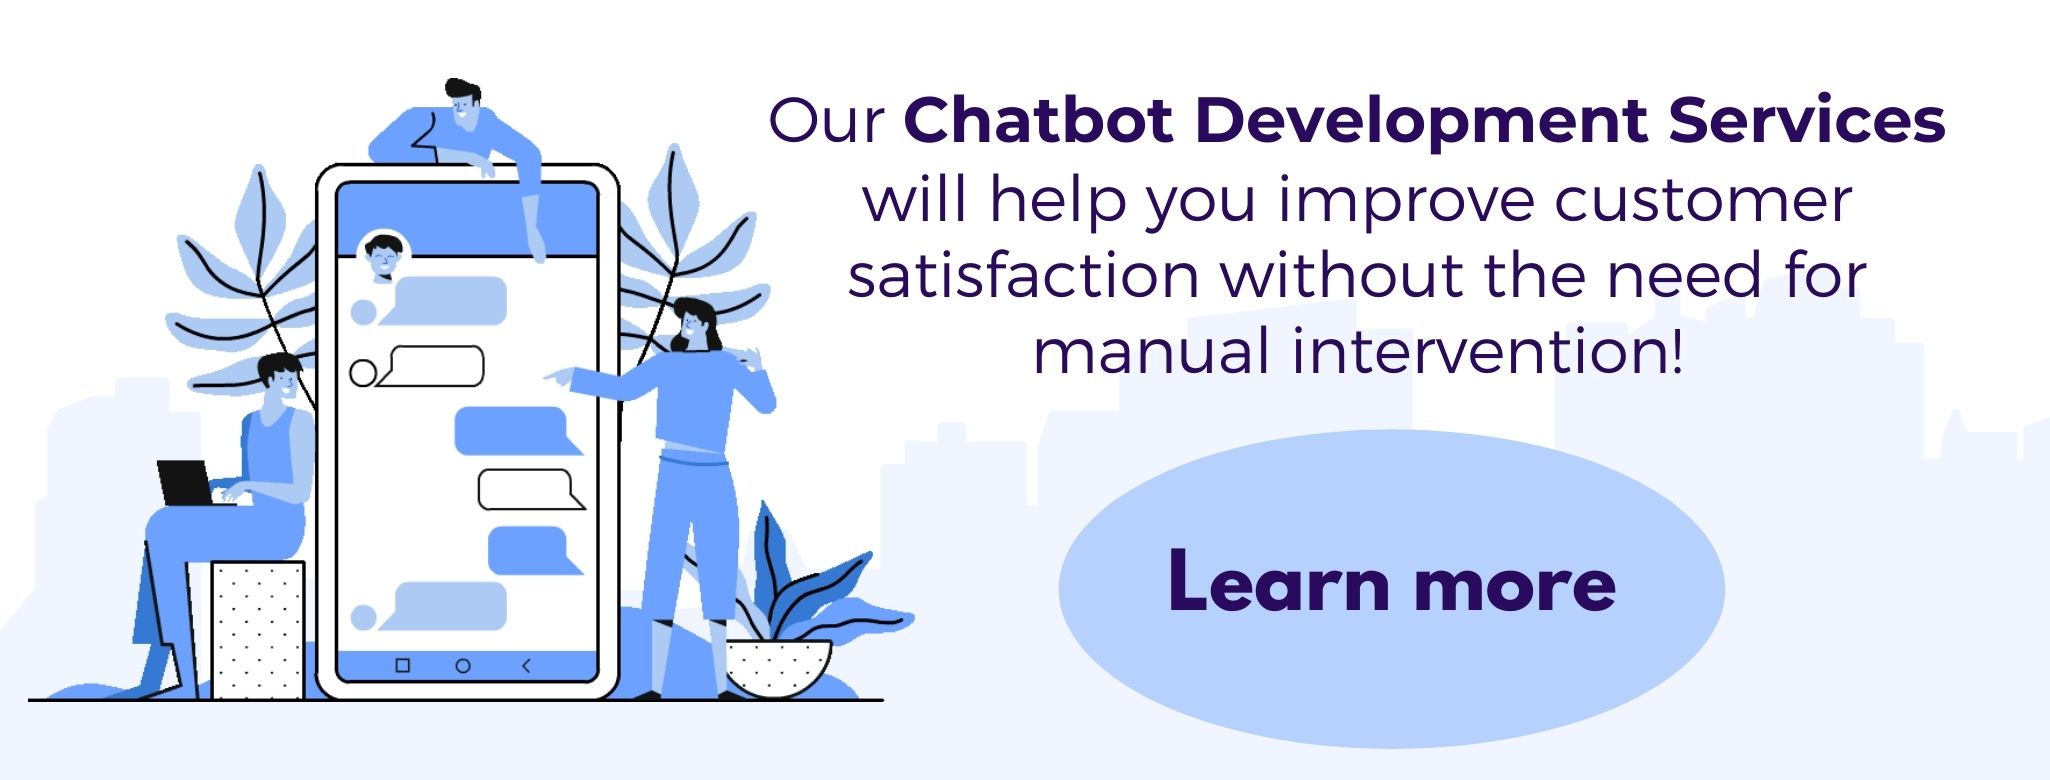 Chatbot platform